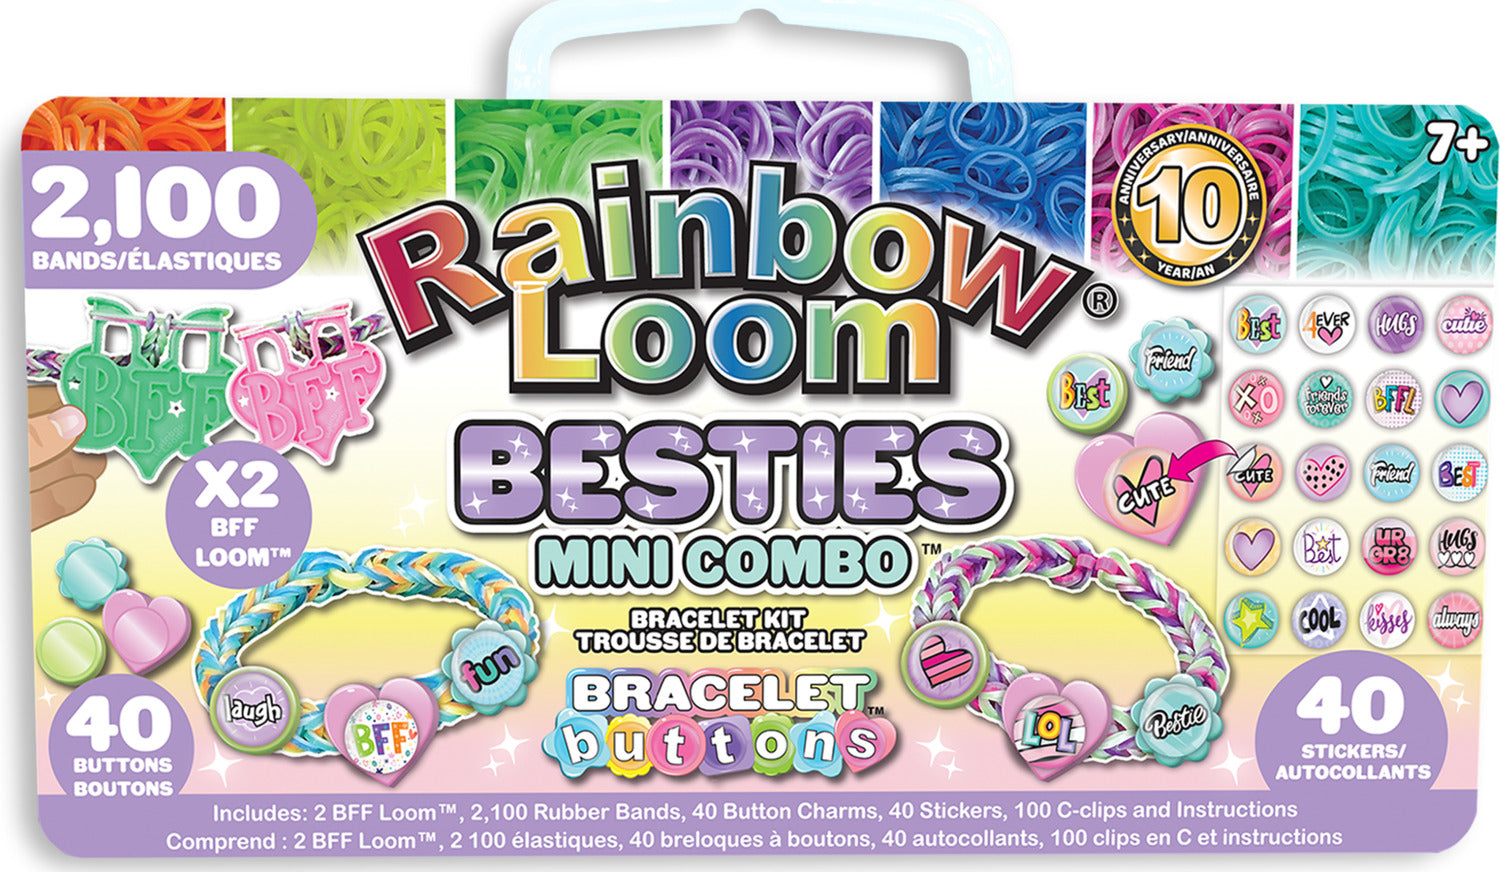 Rainbow Loom Beadmoji Mini Combo Kit